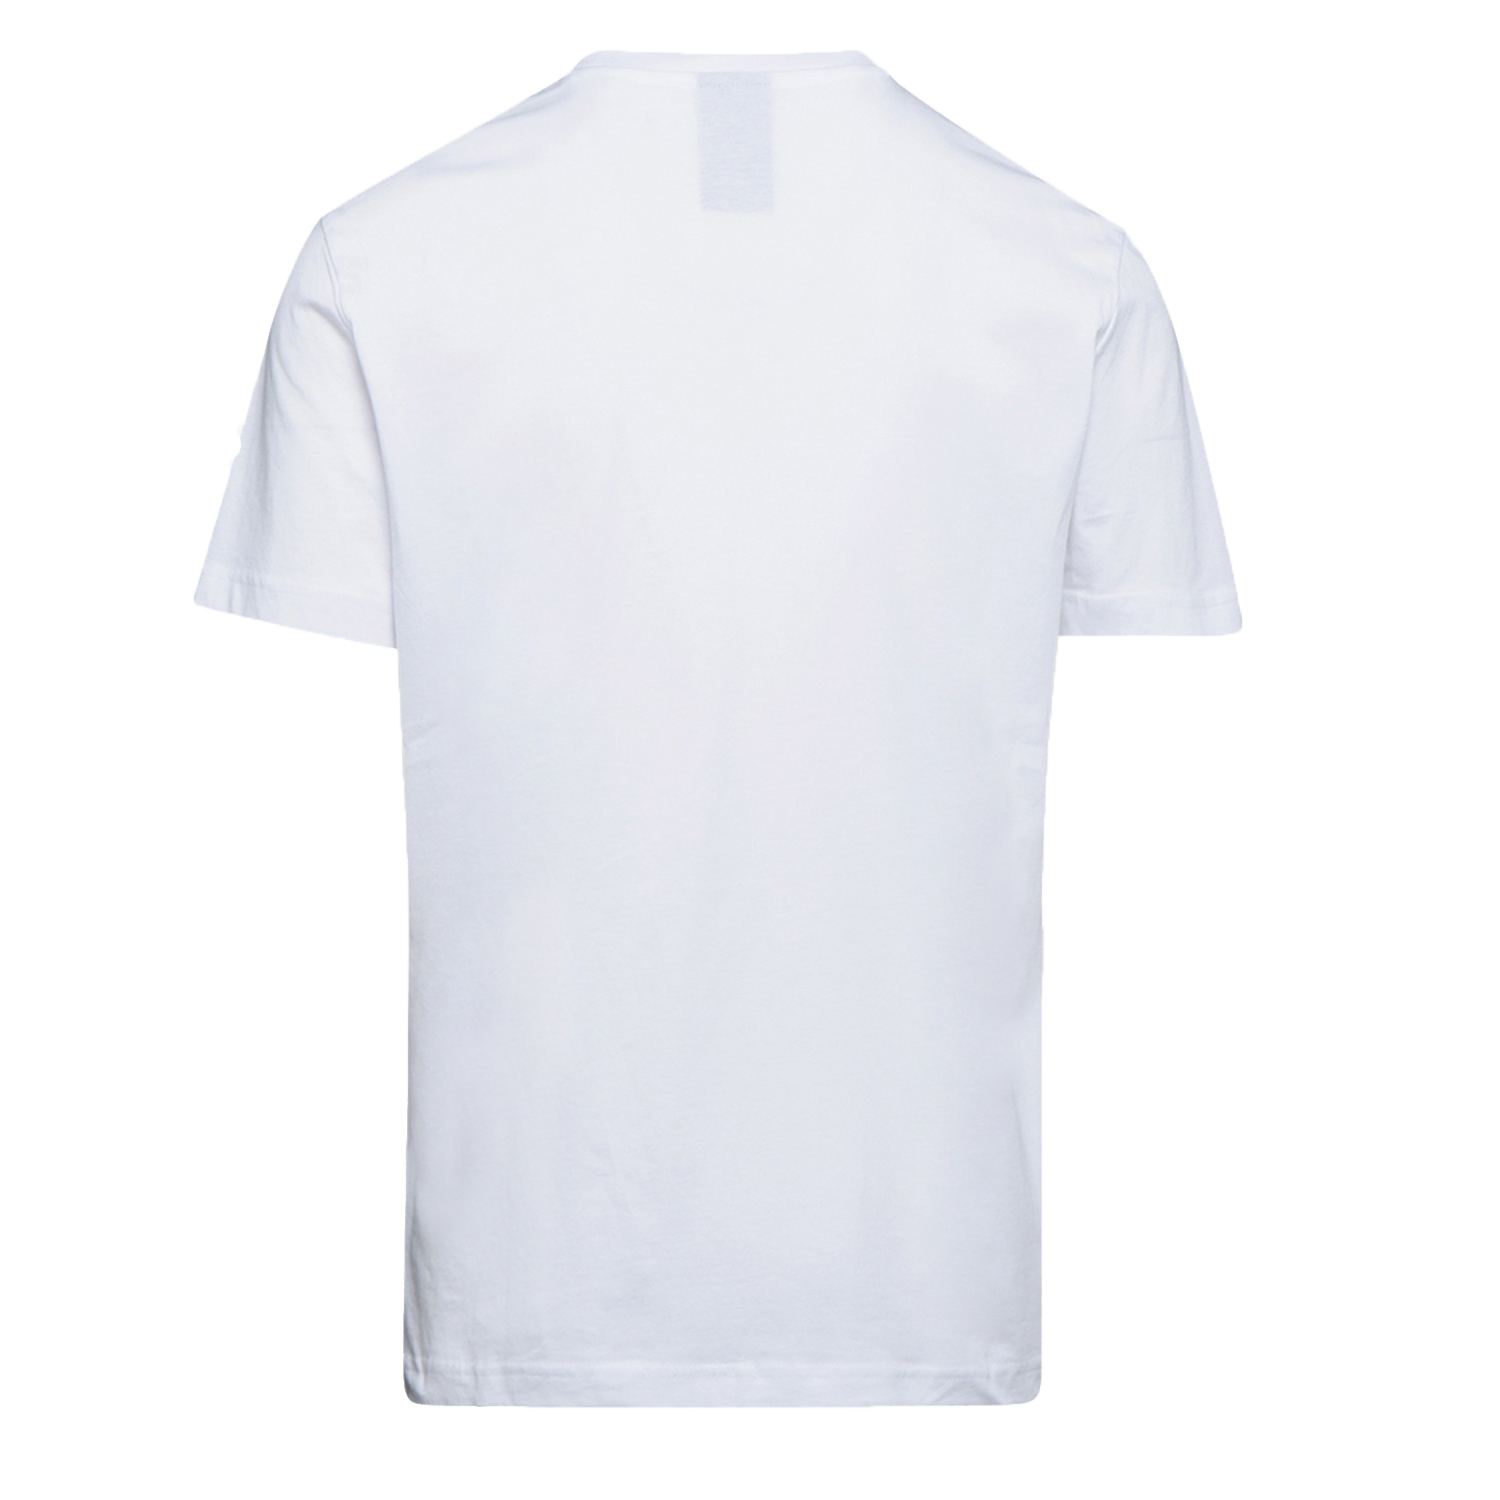 Tee-shirt de travail GRAPHIC ORGANIC à manches courtes blanc TM - DIADORA SPA - 702.176914